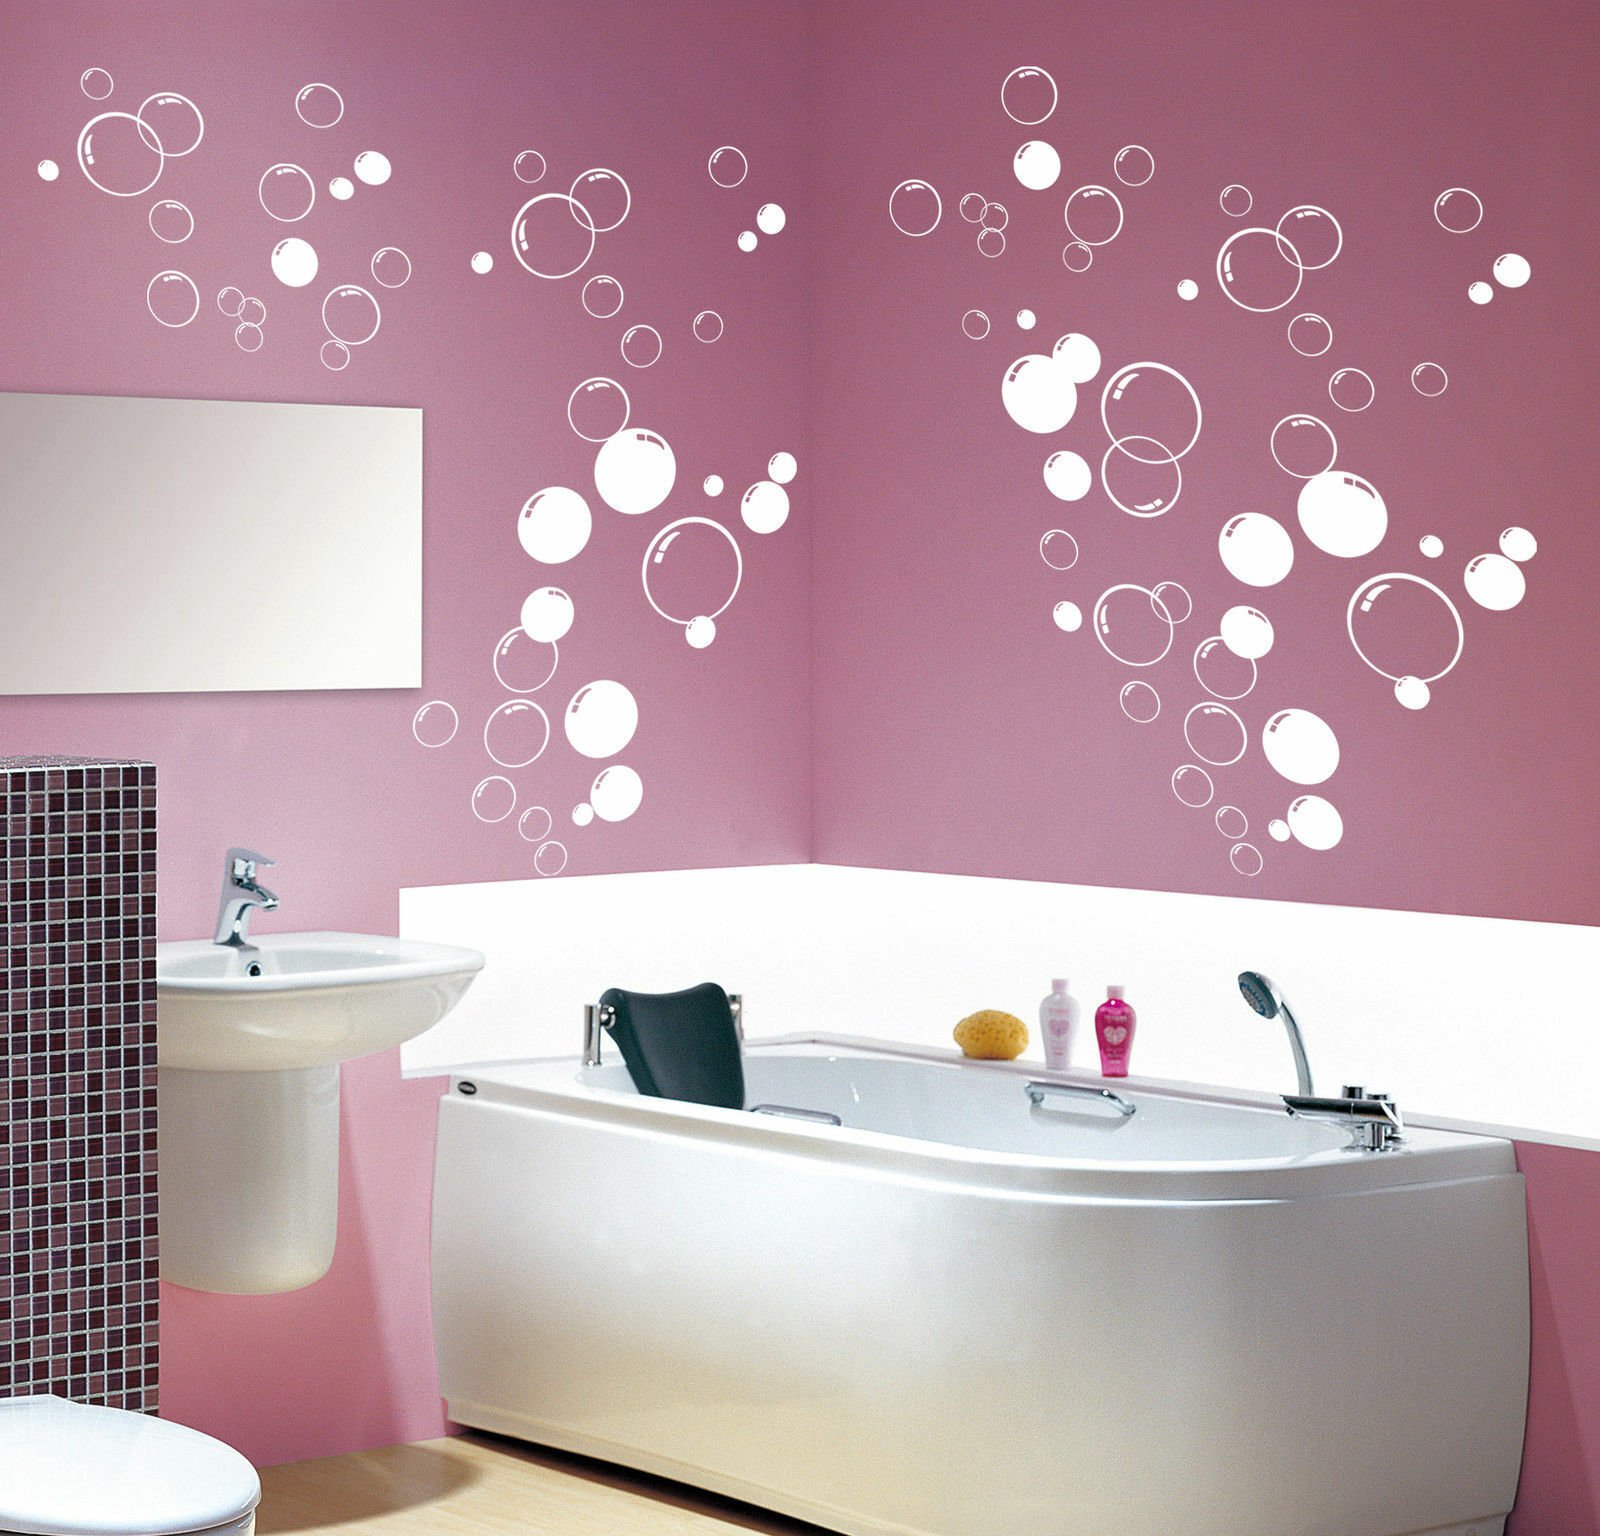 Как правильно покрасить стены в ванной своими руками